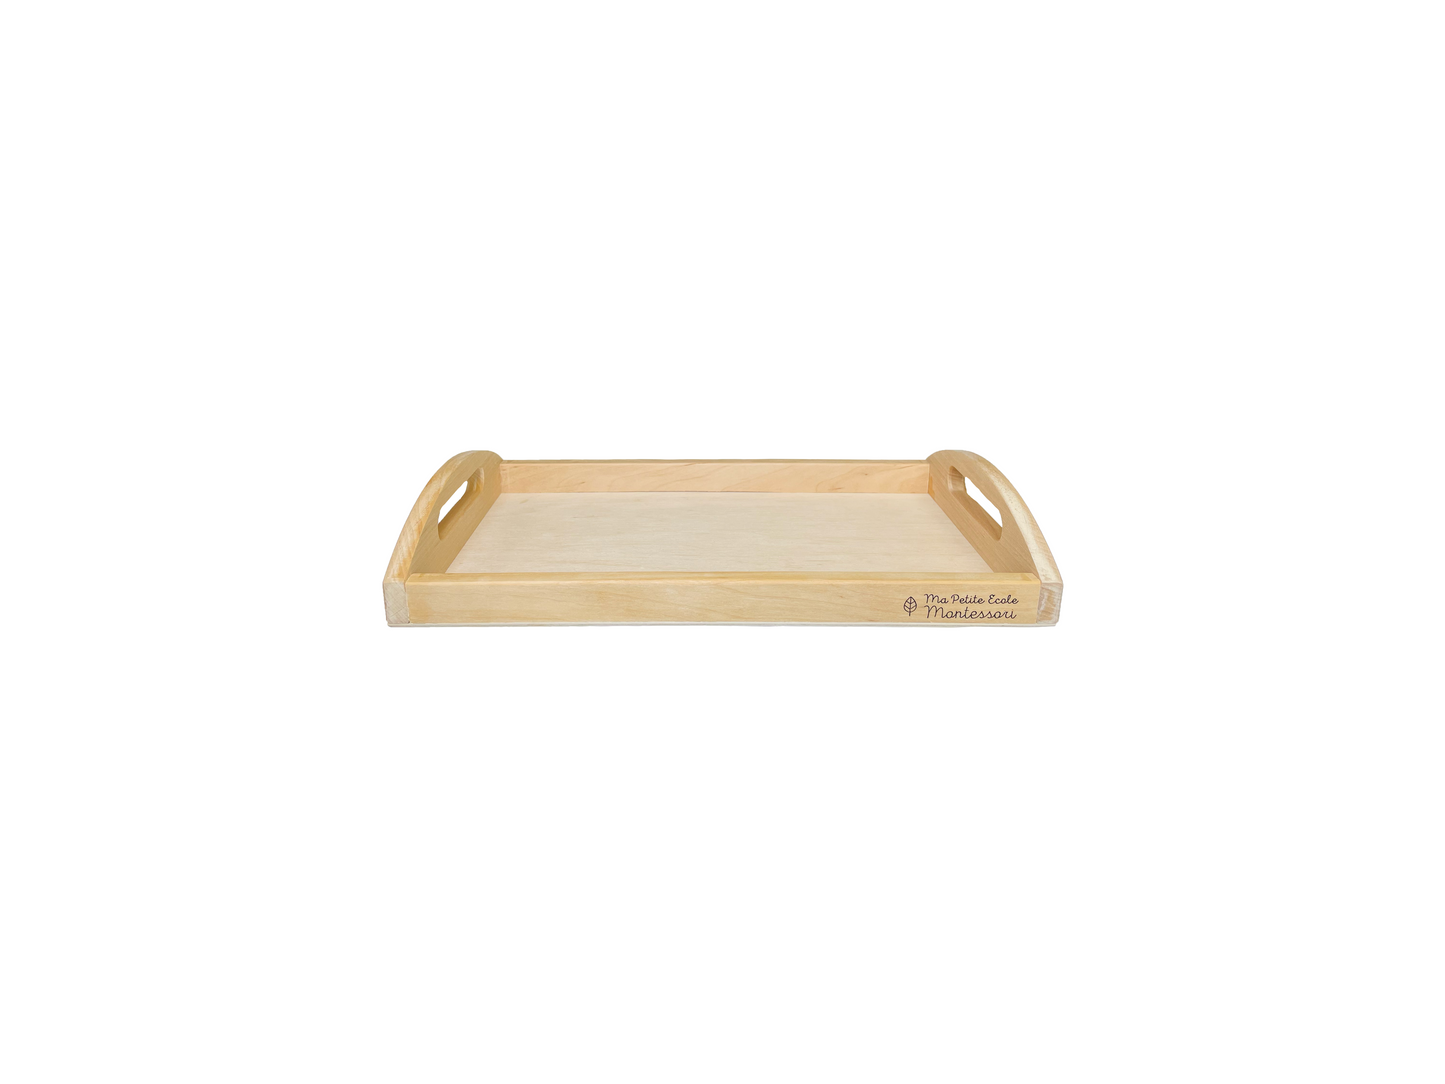 Activity tray: small wooden tray